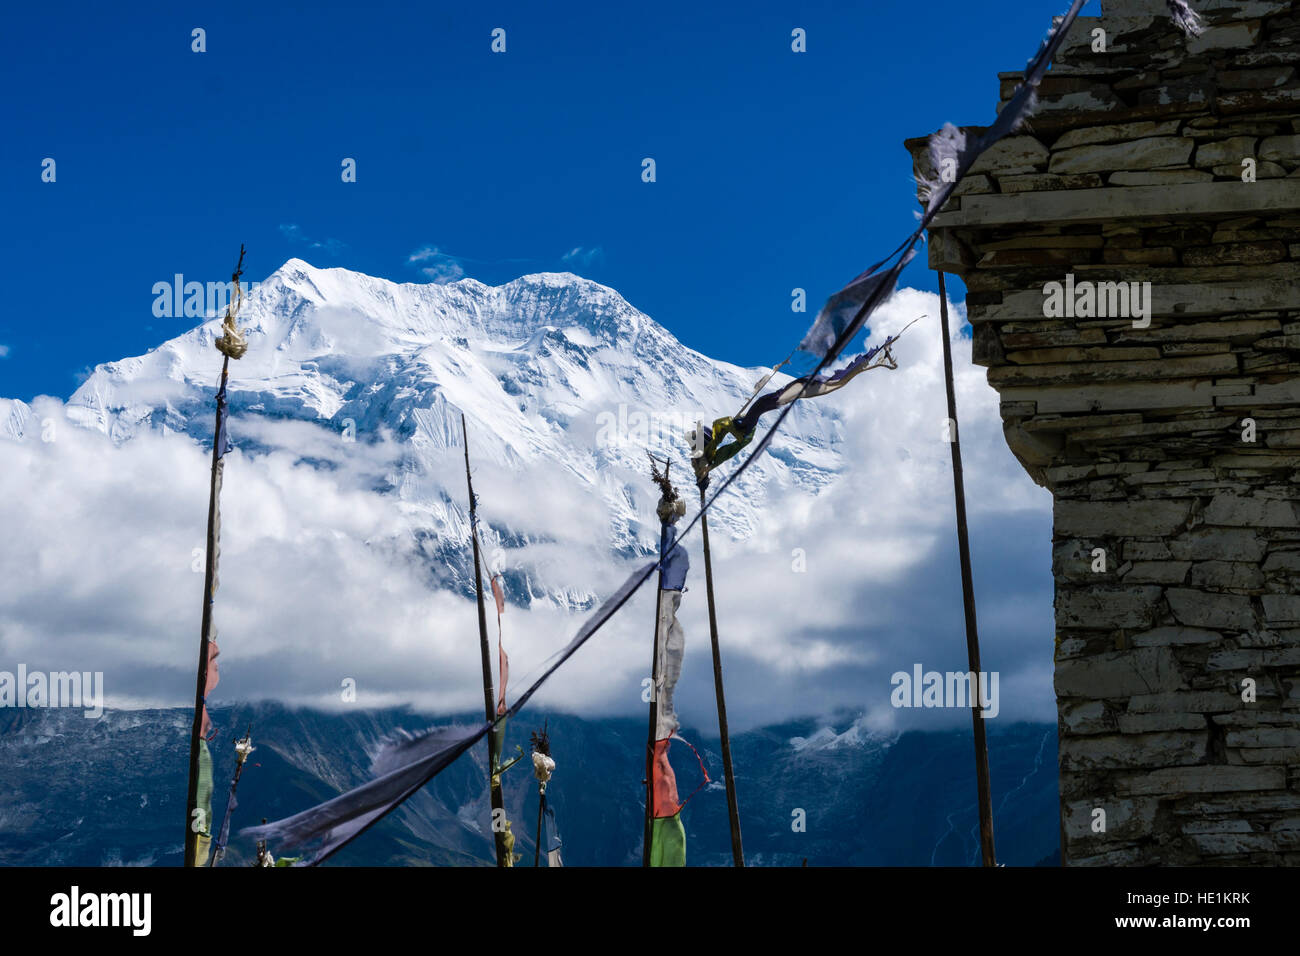 Le sommet de la montagne enneigée annapurna 2, vu d'un stupa bouddhiste, situé au-dessus du village ghyaru Banque D'Images